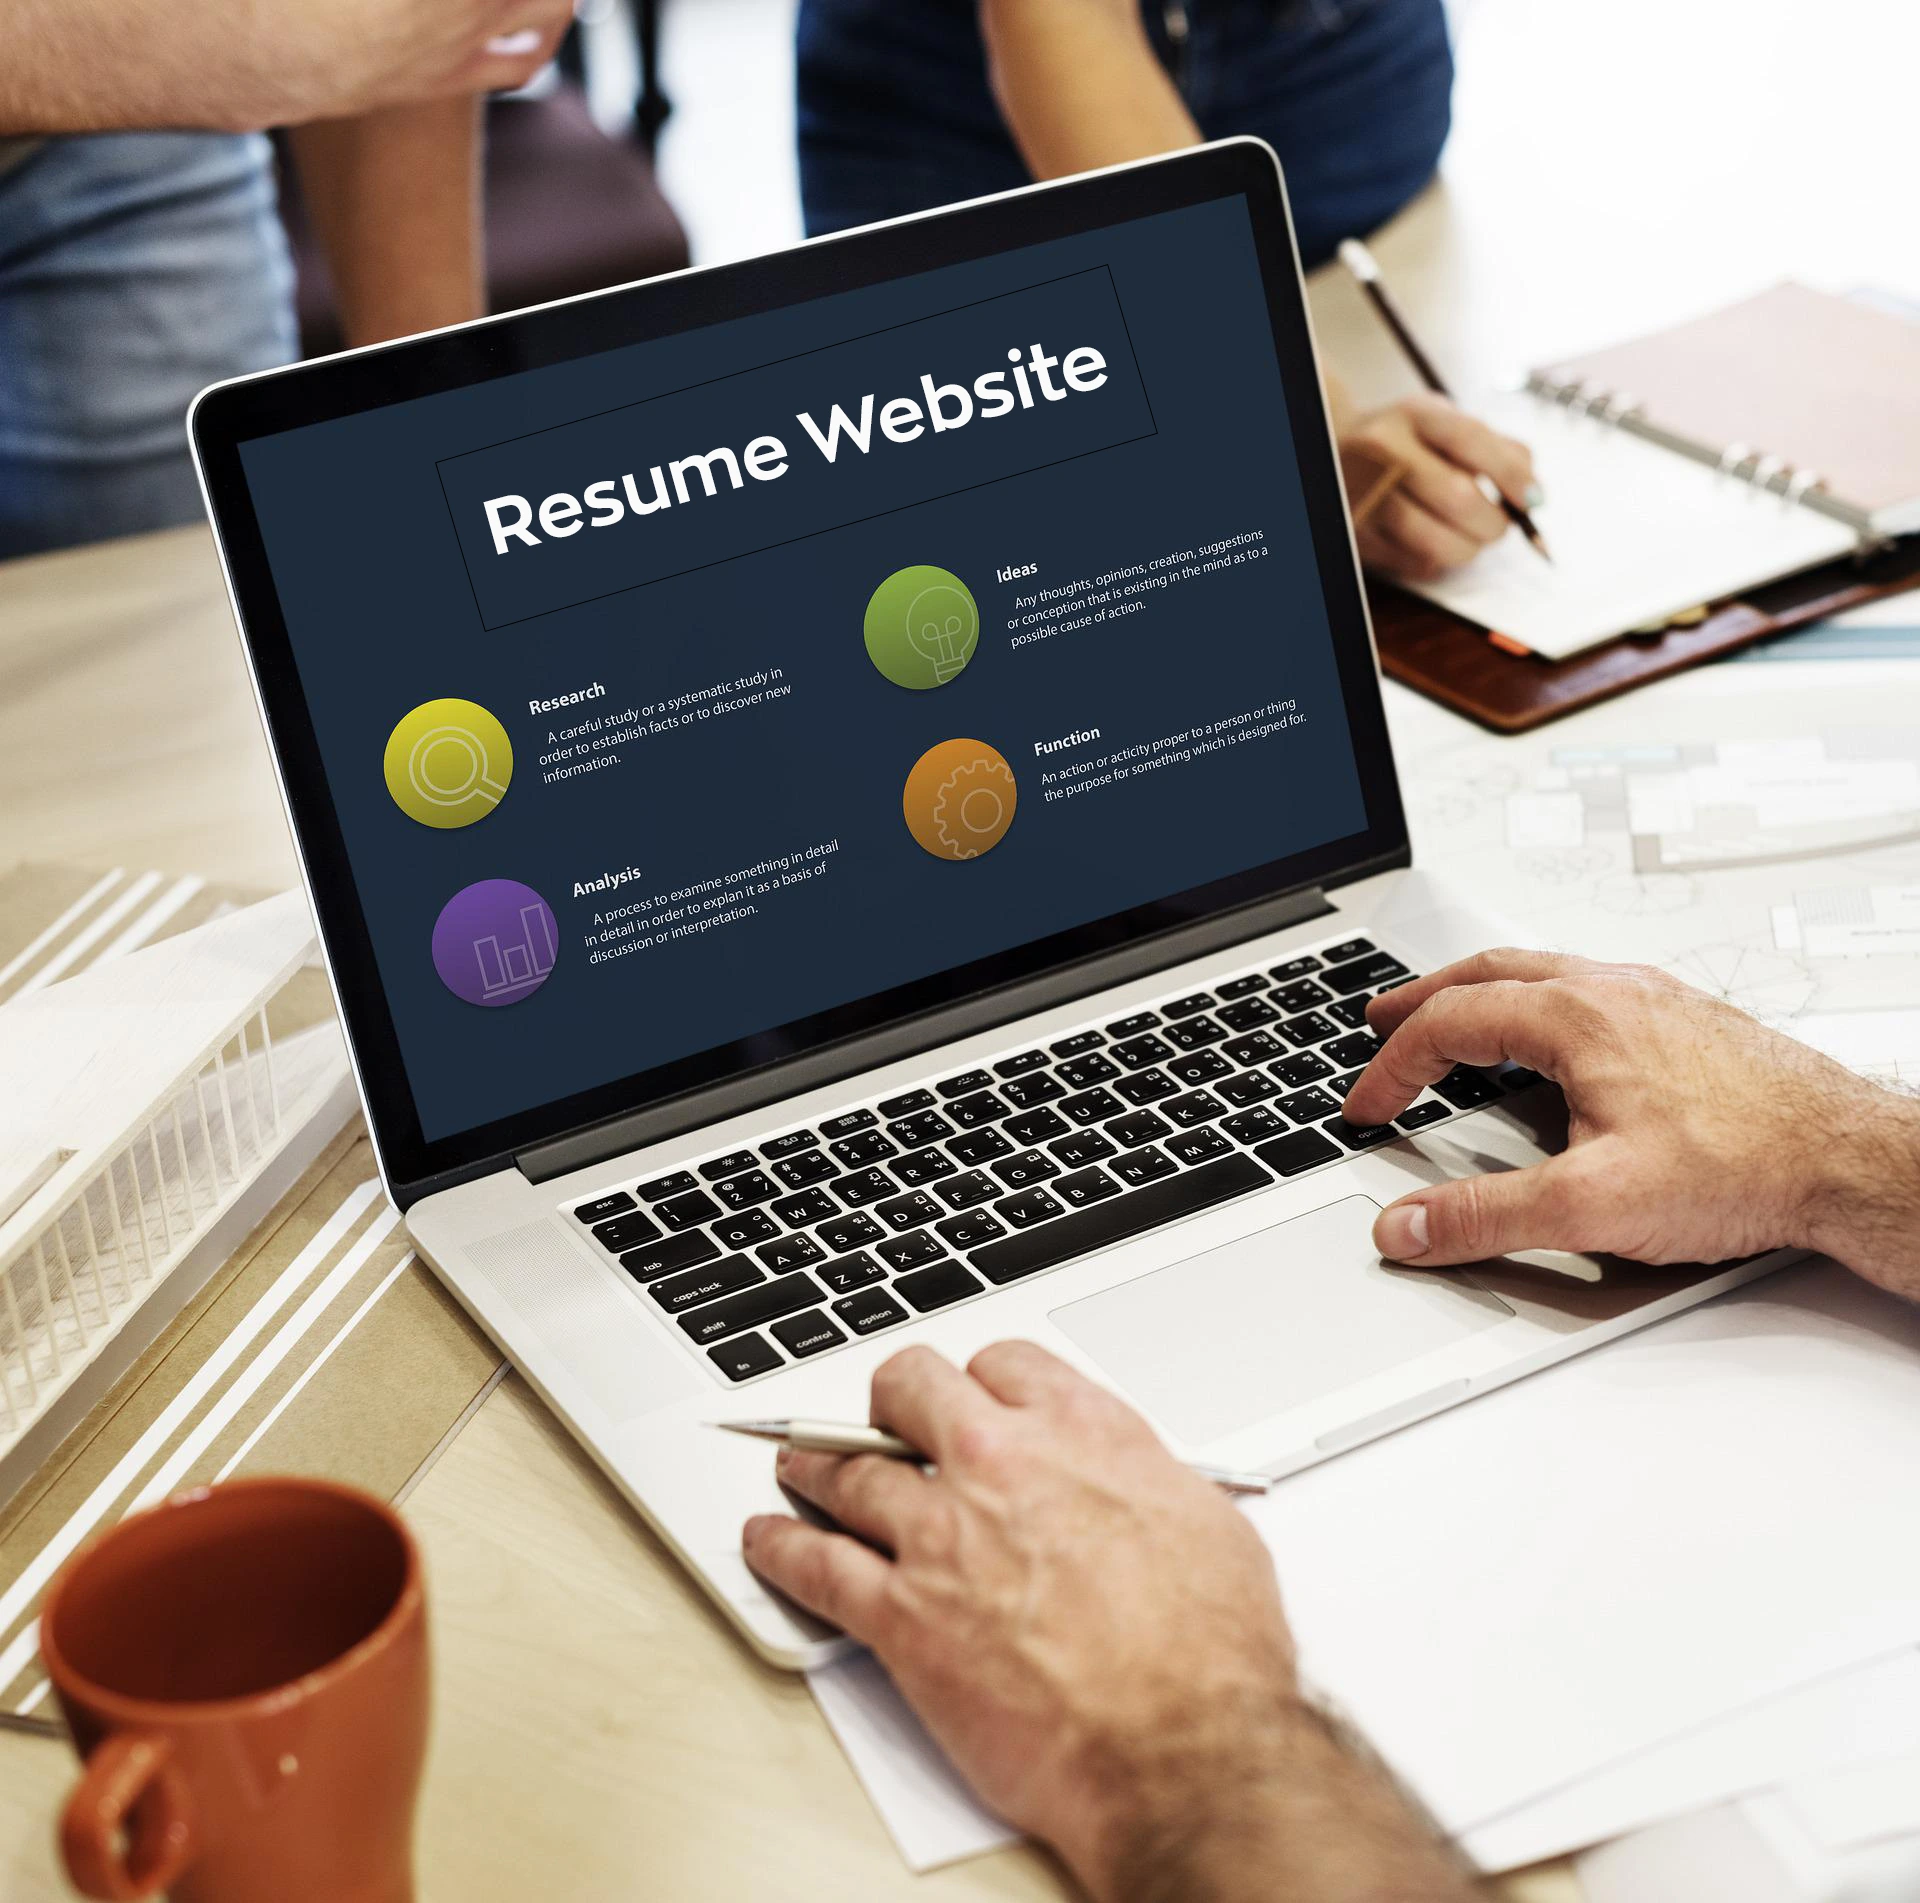 Benefits of resume website